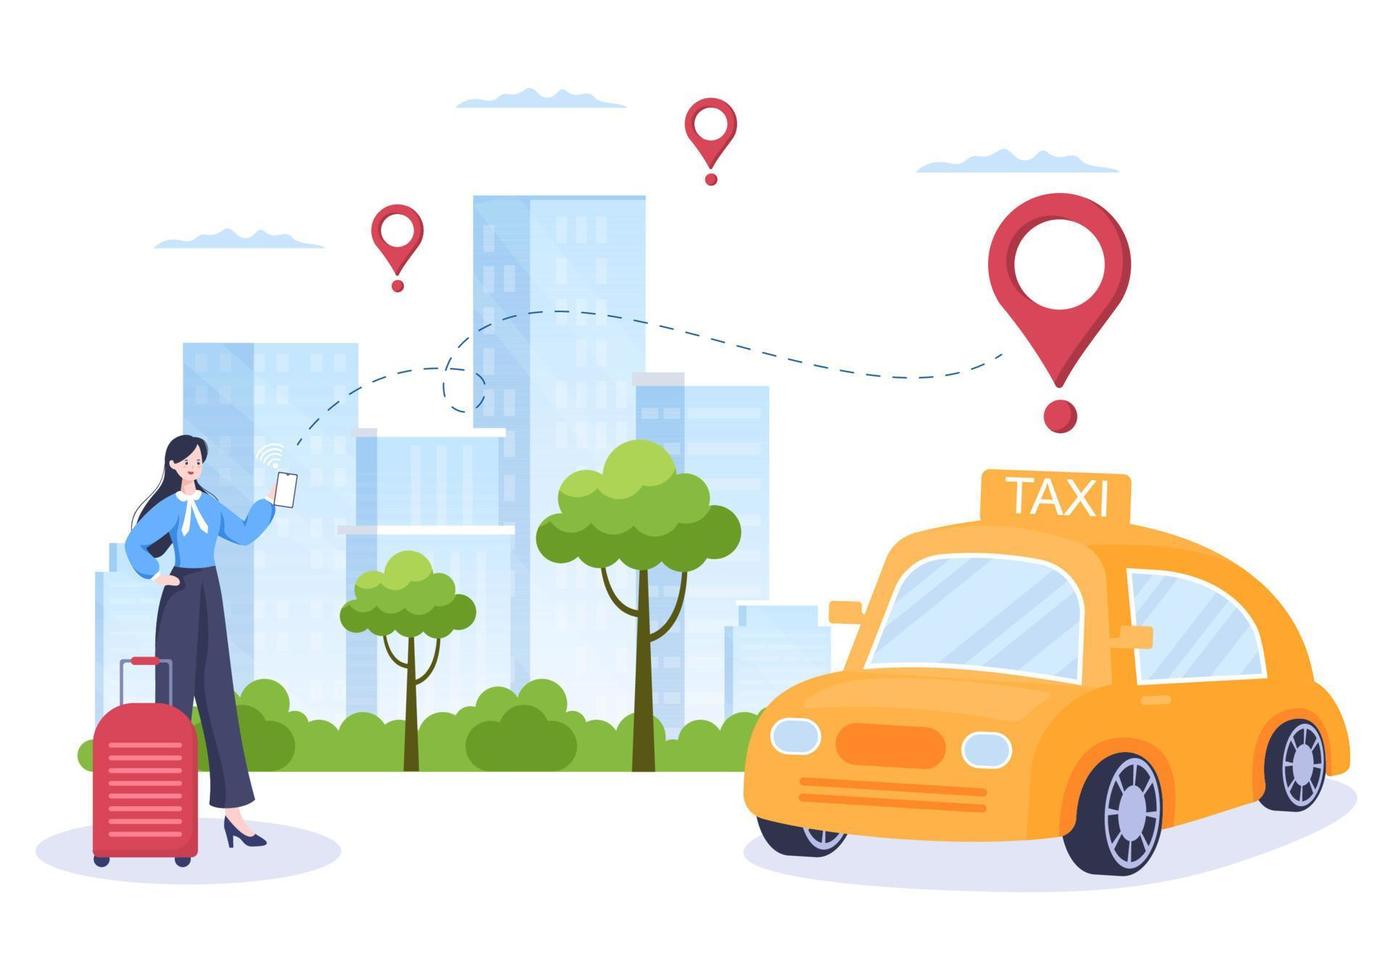 online taxibokning reseservice platt designillustration via mobilapp på smartphone ta någon till en destination som lämpar sig för bakgrund, affisch eller banner vektor